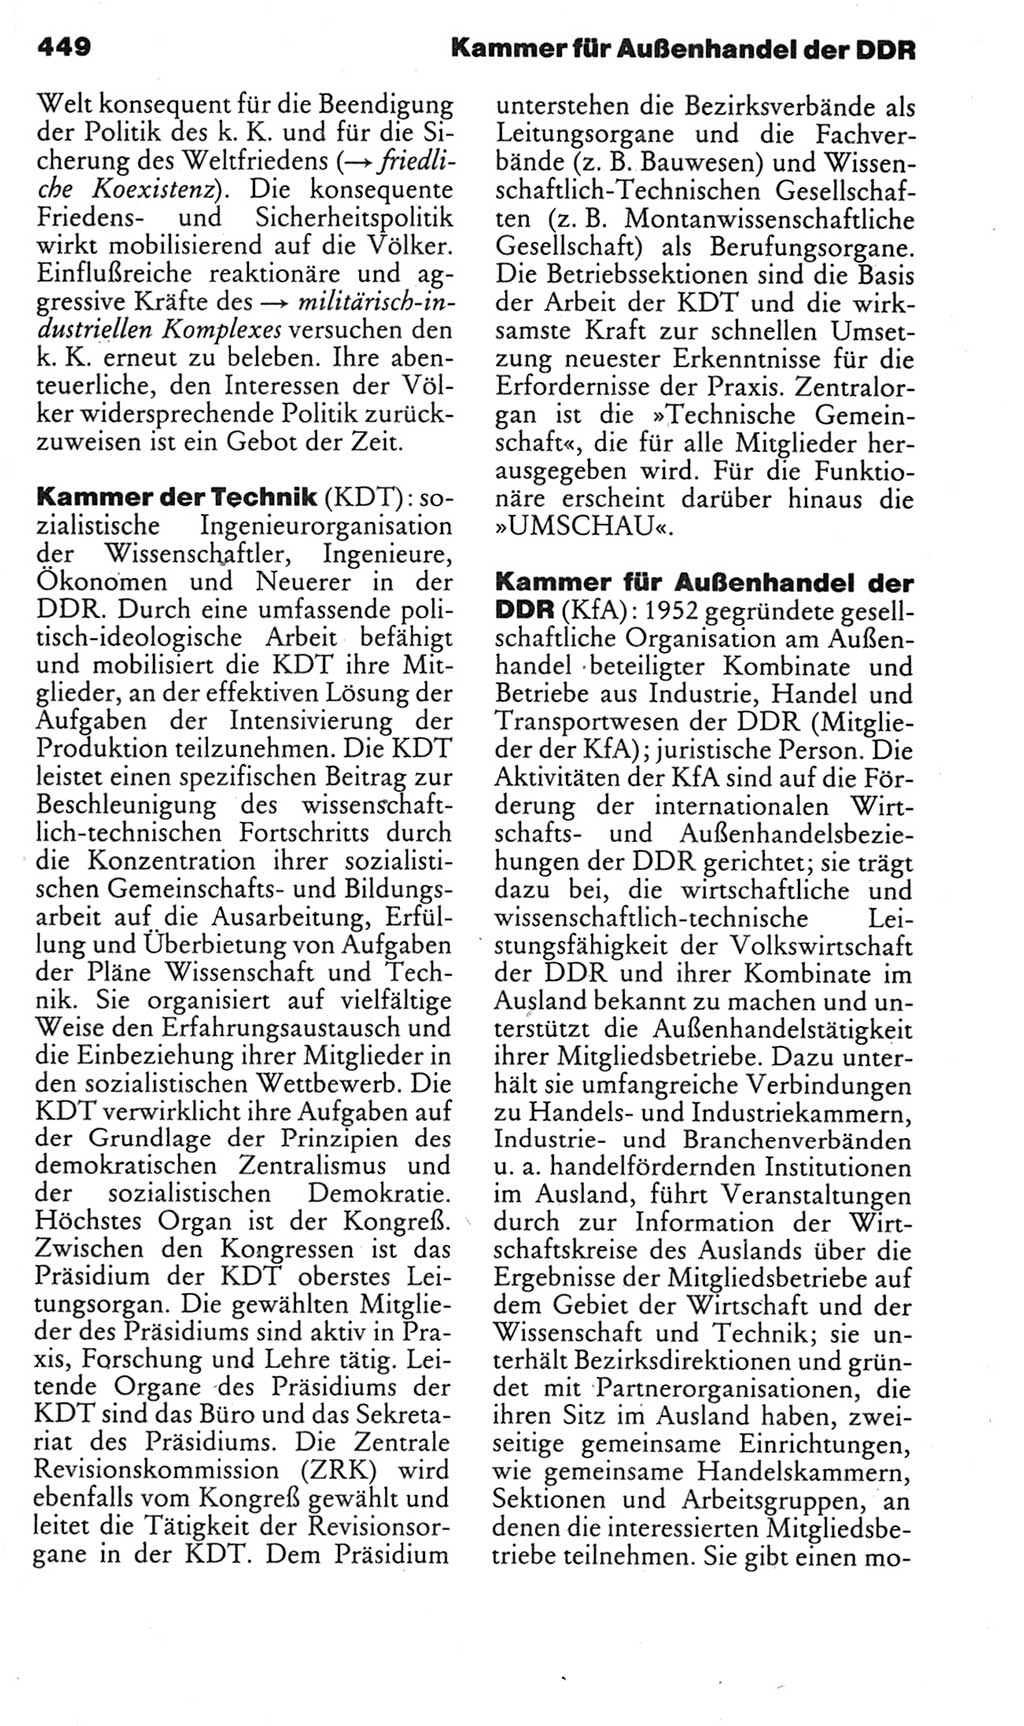 Kleines politisches Wörterbuch [Deutsche Demokratische Republik (DDR)] 1985, Seite 449 (Kl. pol. Wb. DDR 1985, S. 449)